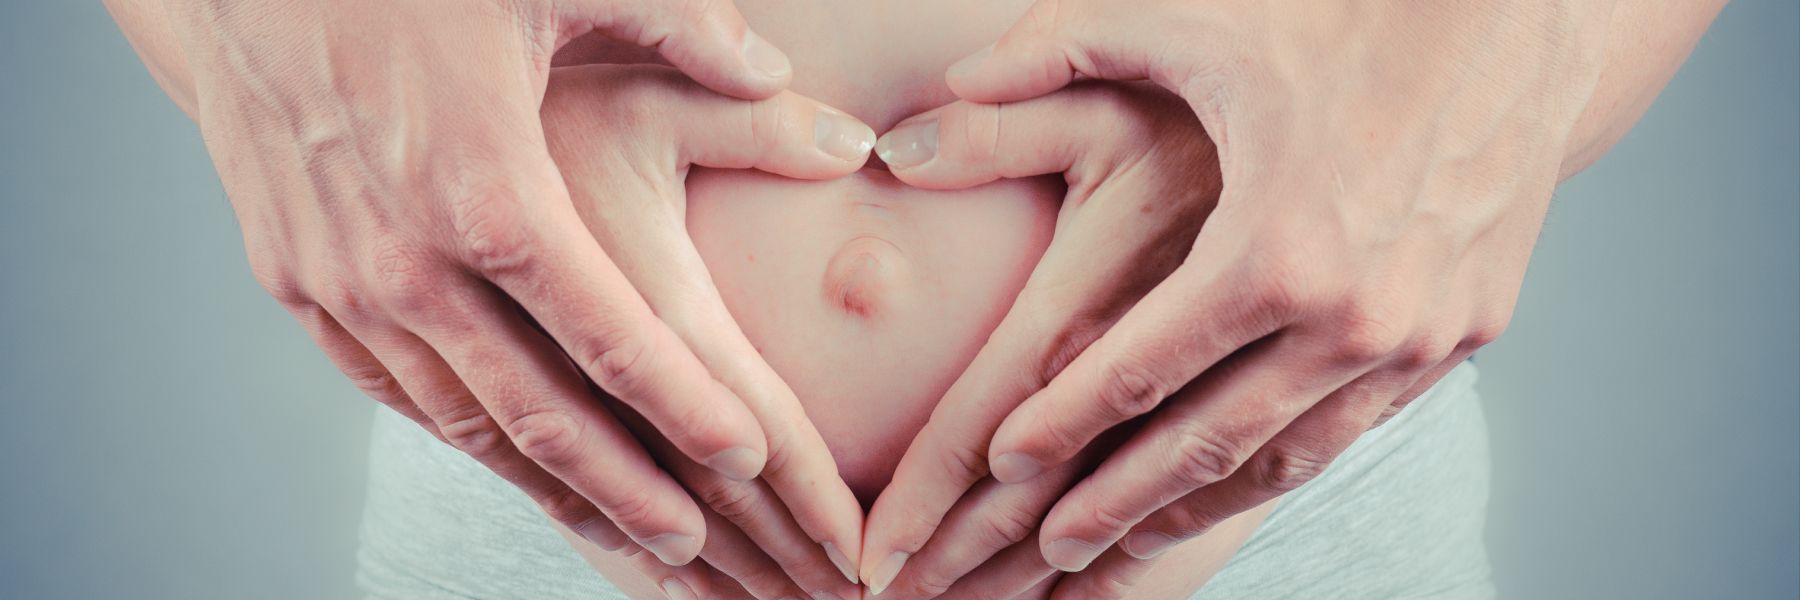 Prípravok podporí plodnosť a poskytne telu všetko, čo v období tehotenstva potrebuje